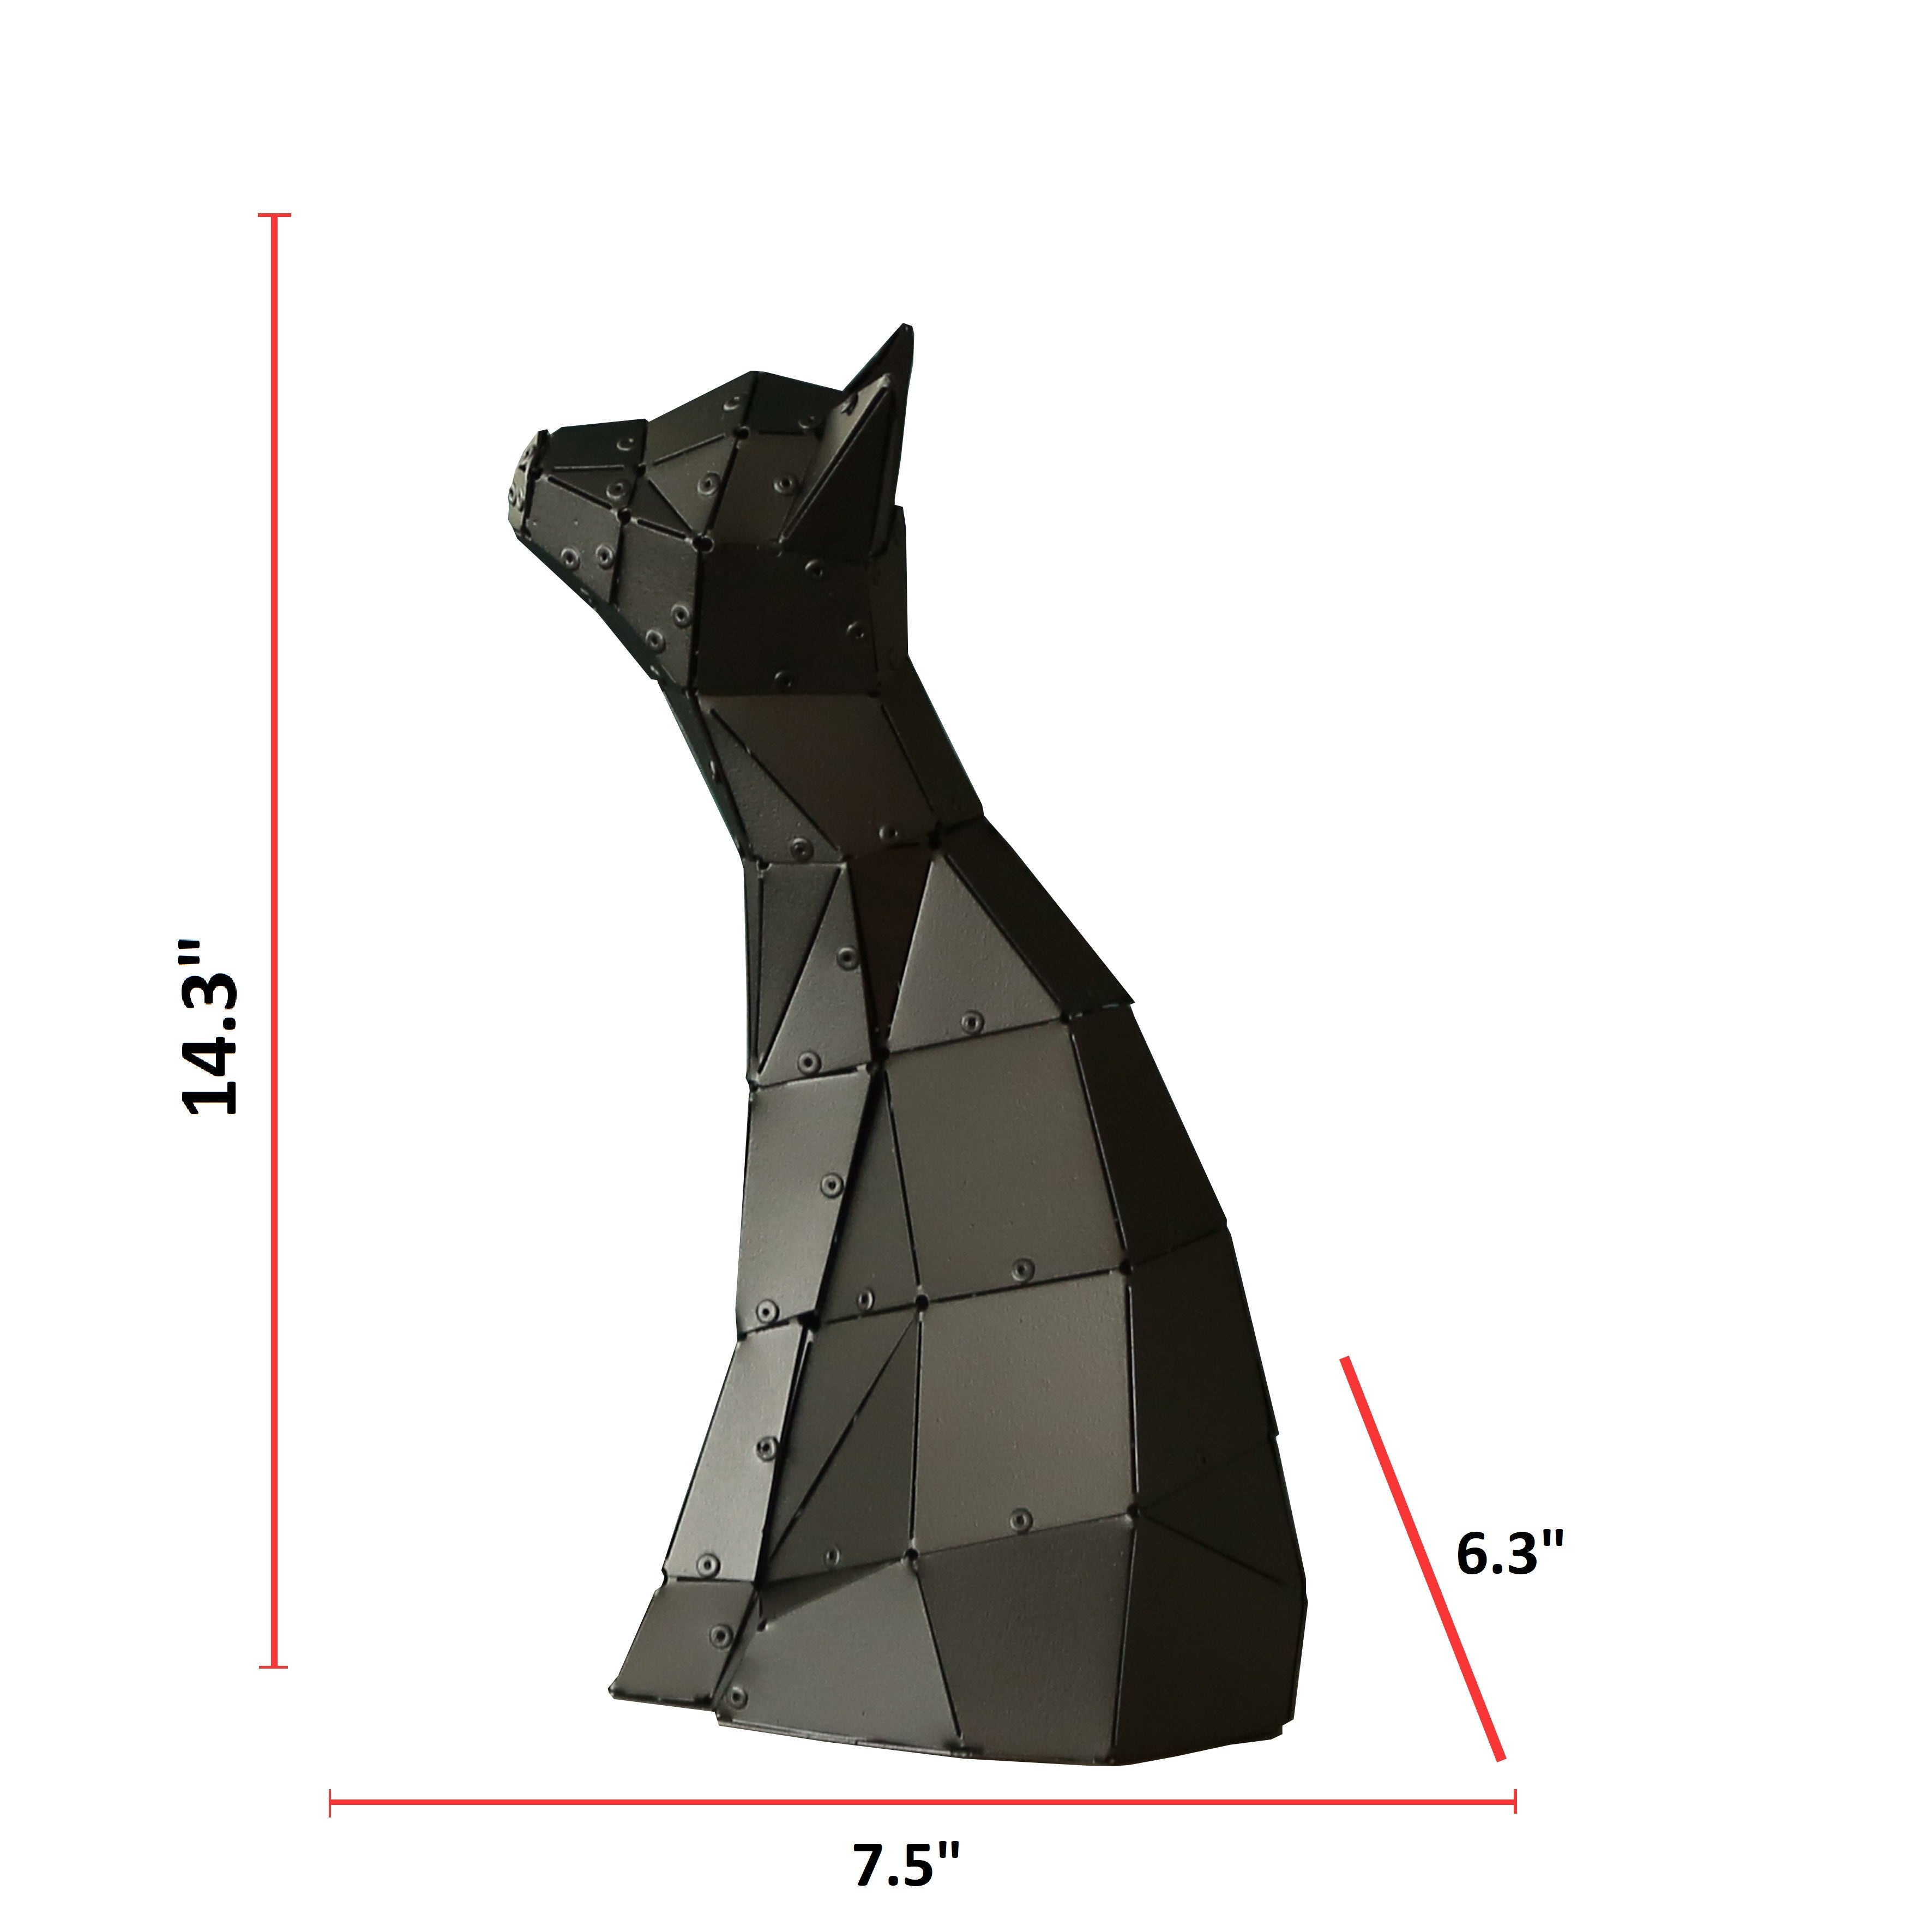 3D Geometric Art of Cat